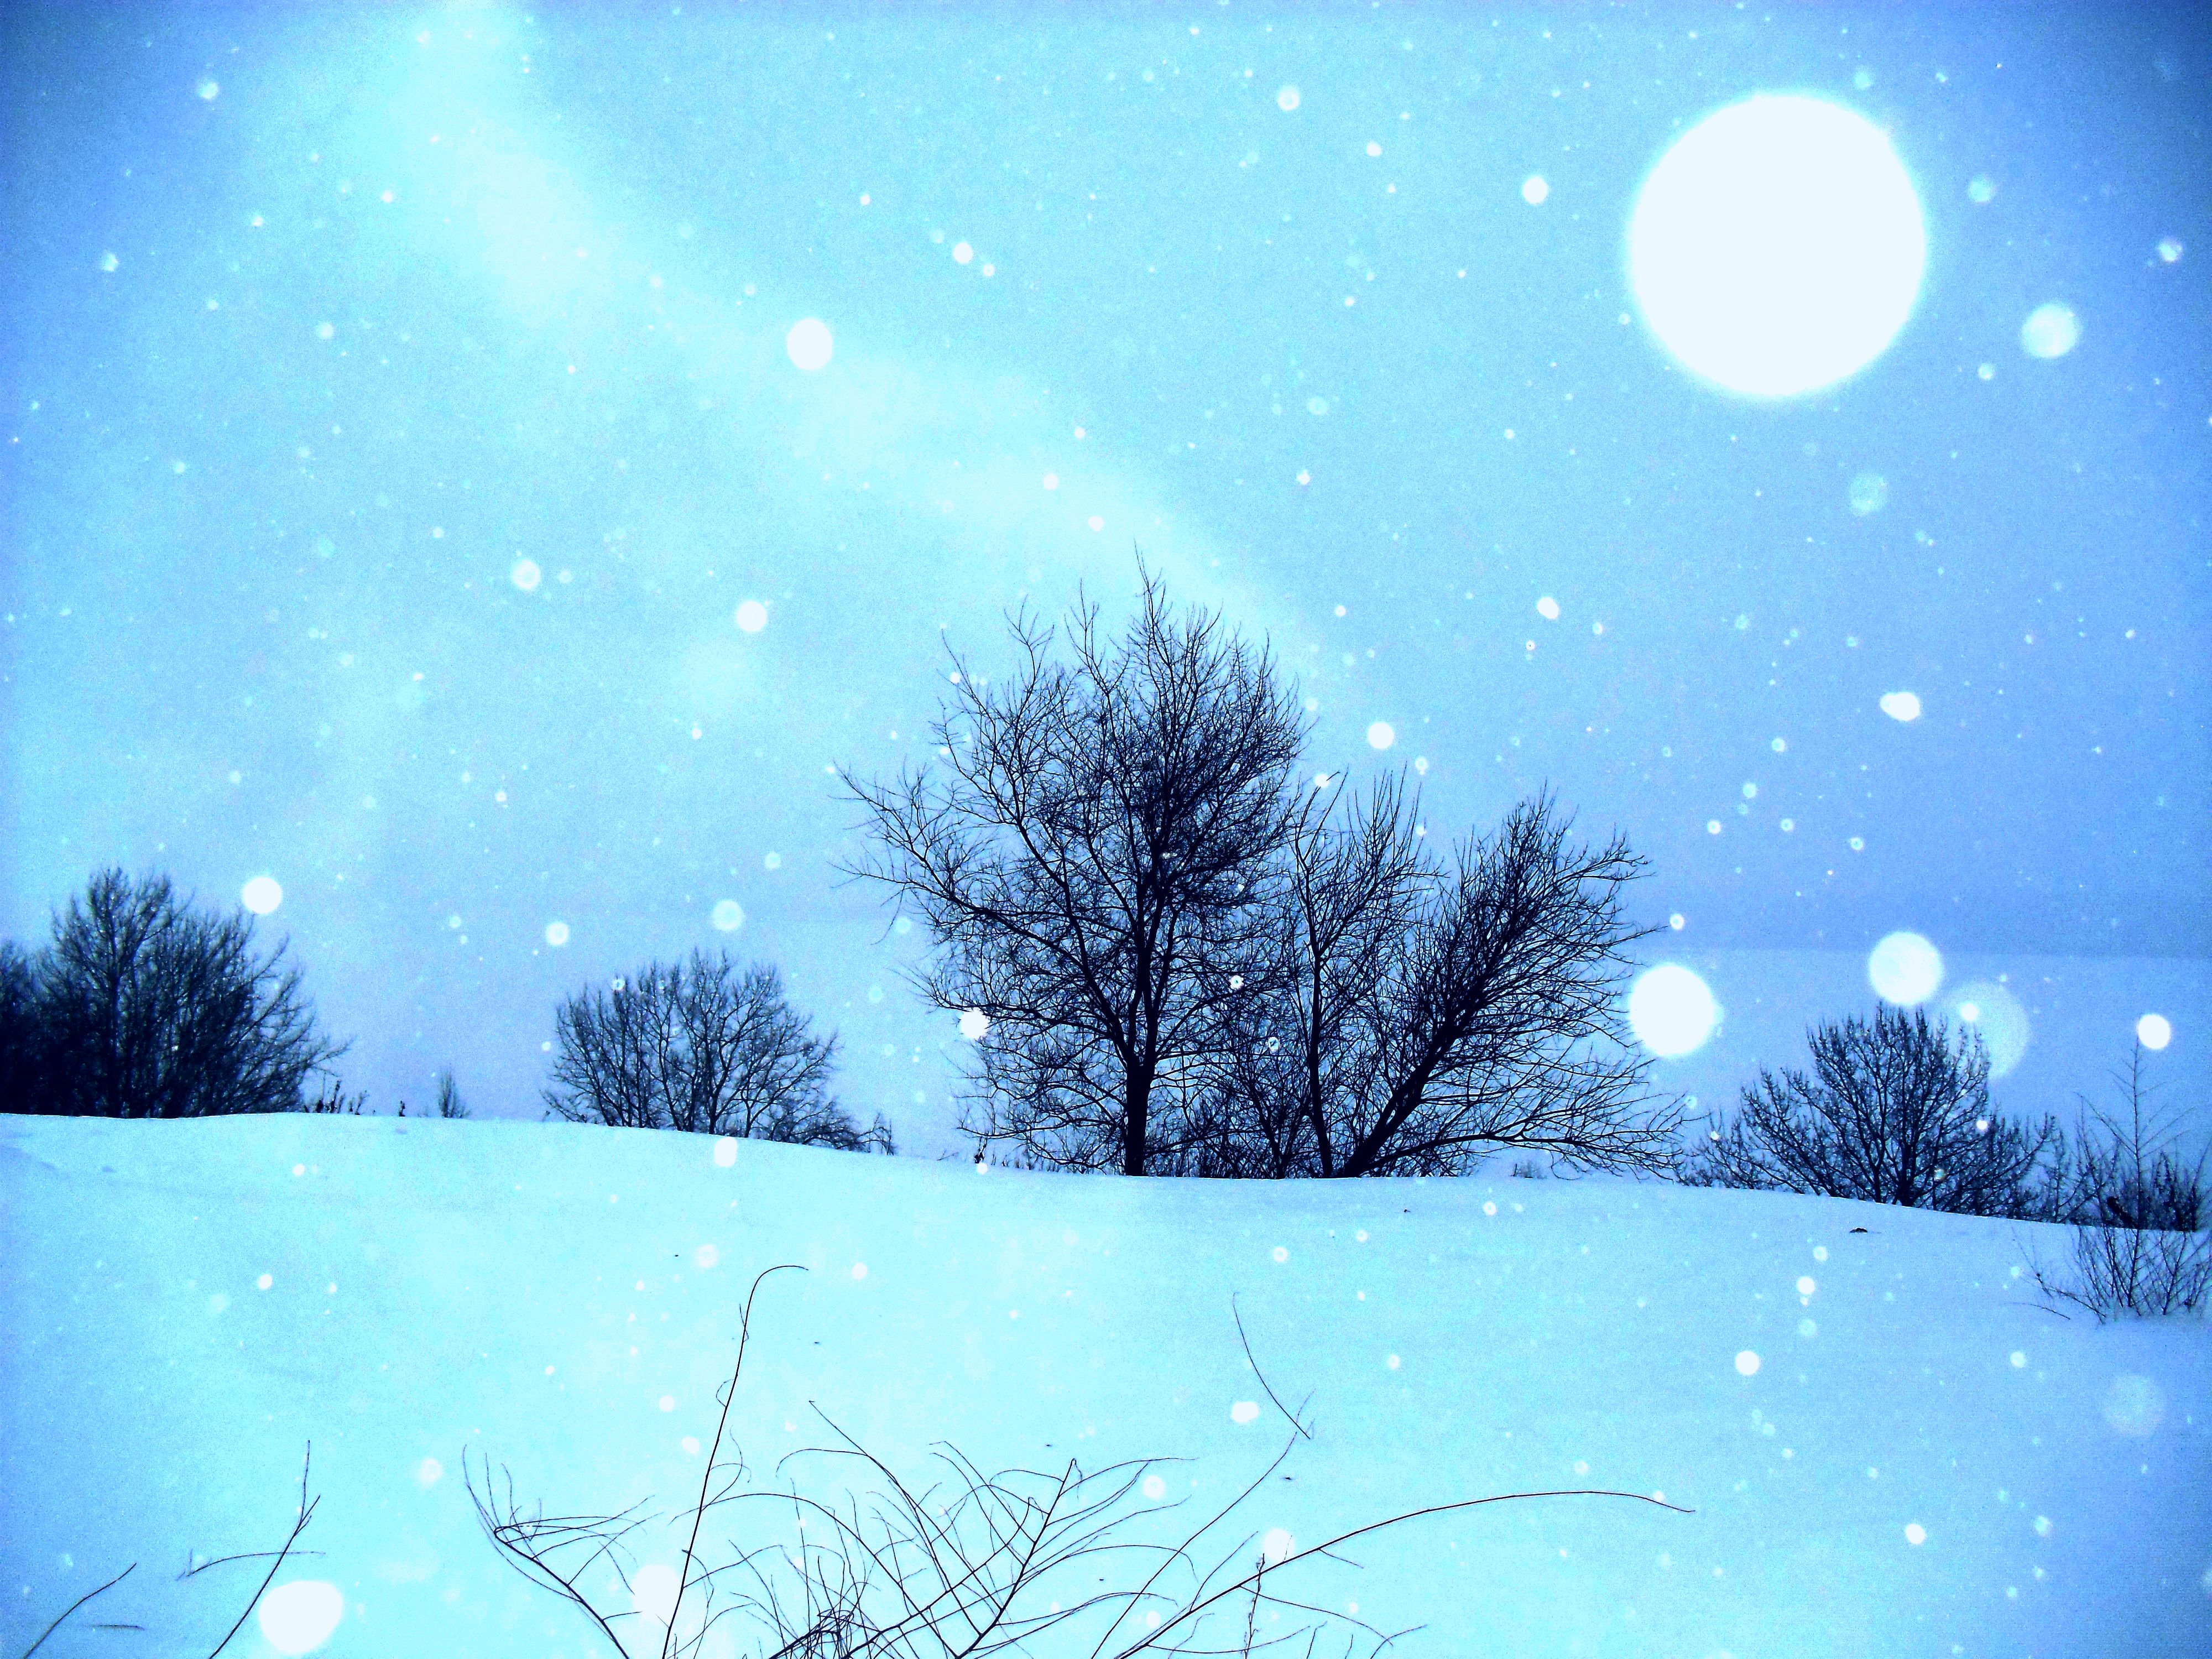 Текст сияет снег слепит глаза деревья. Снег серебрится. Зимний вечер. Снег серебрится на солнце. Снег искрится серебрится.